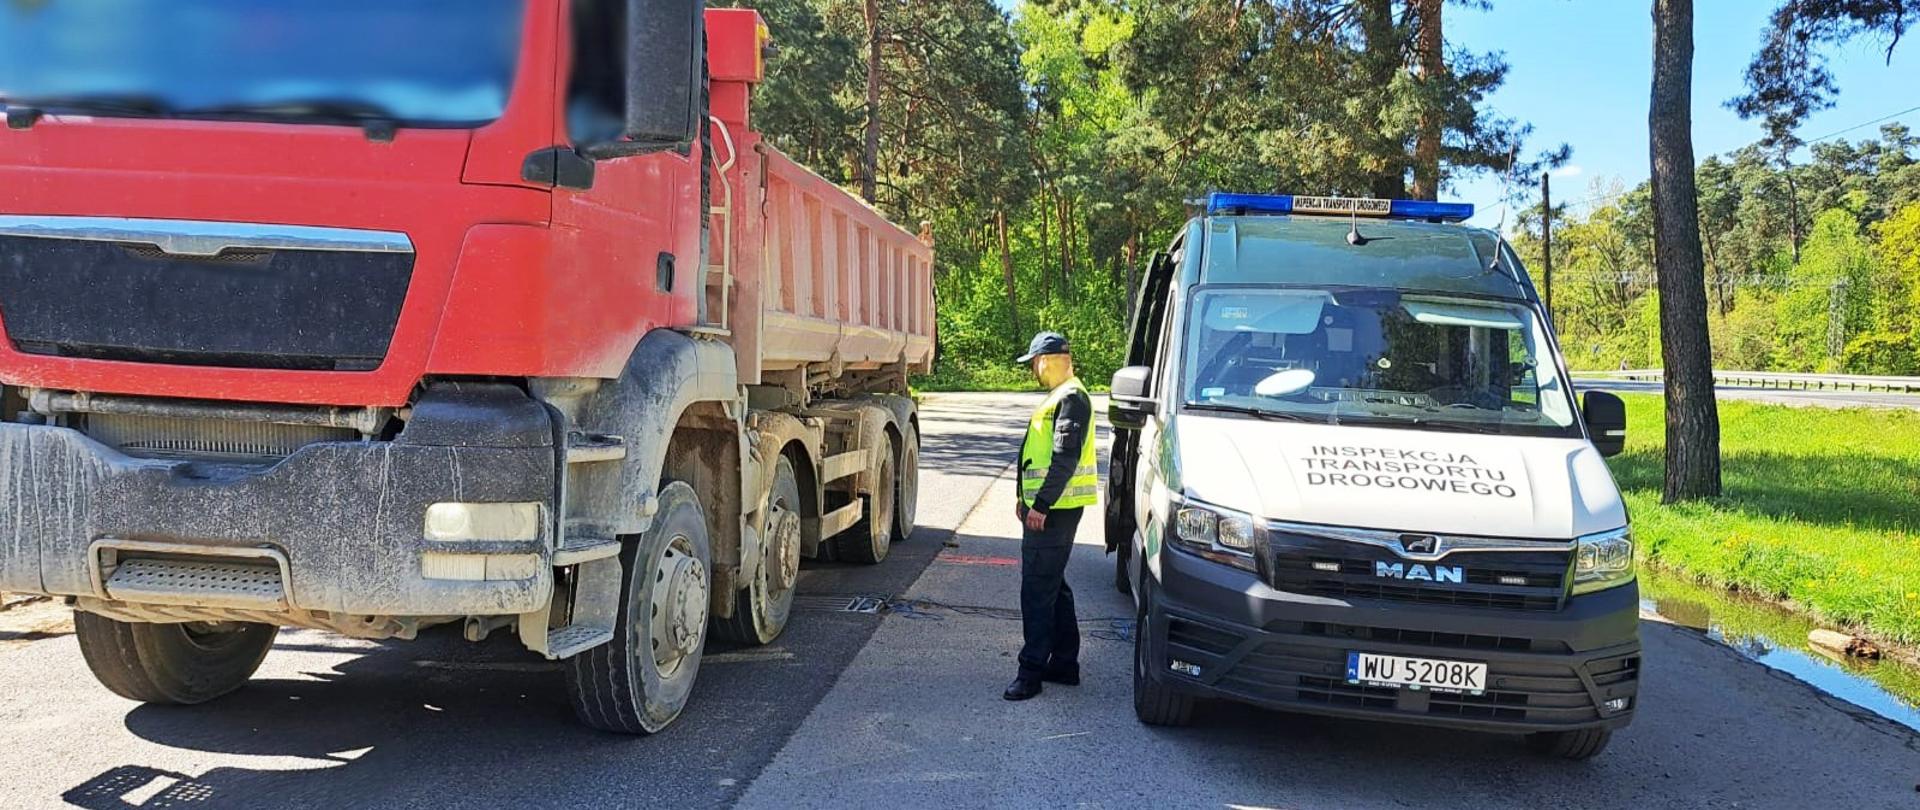 Wywrotka z piachem zatrzymana do kontroli przez inspektorów z Wojewódzkiego Inspektoratu Transportu Drogowego w Radomiu
